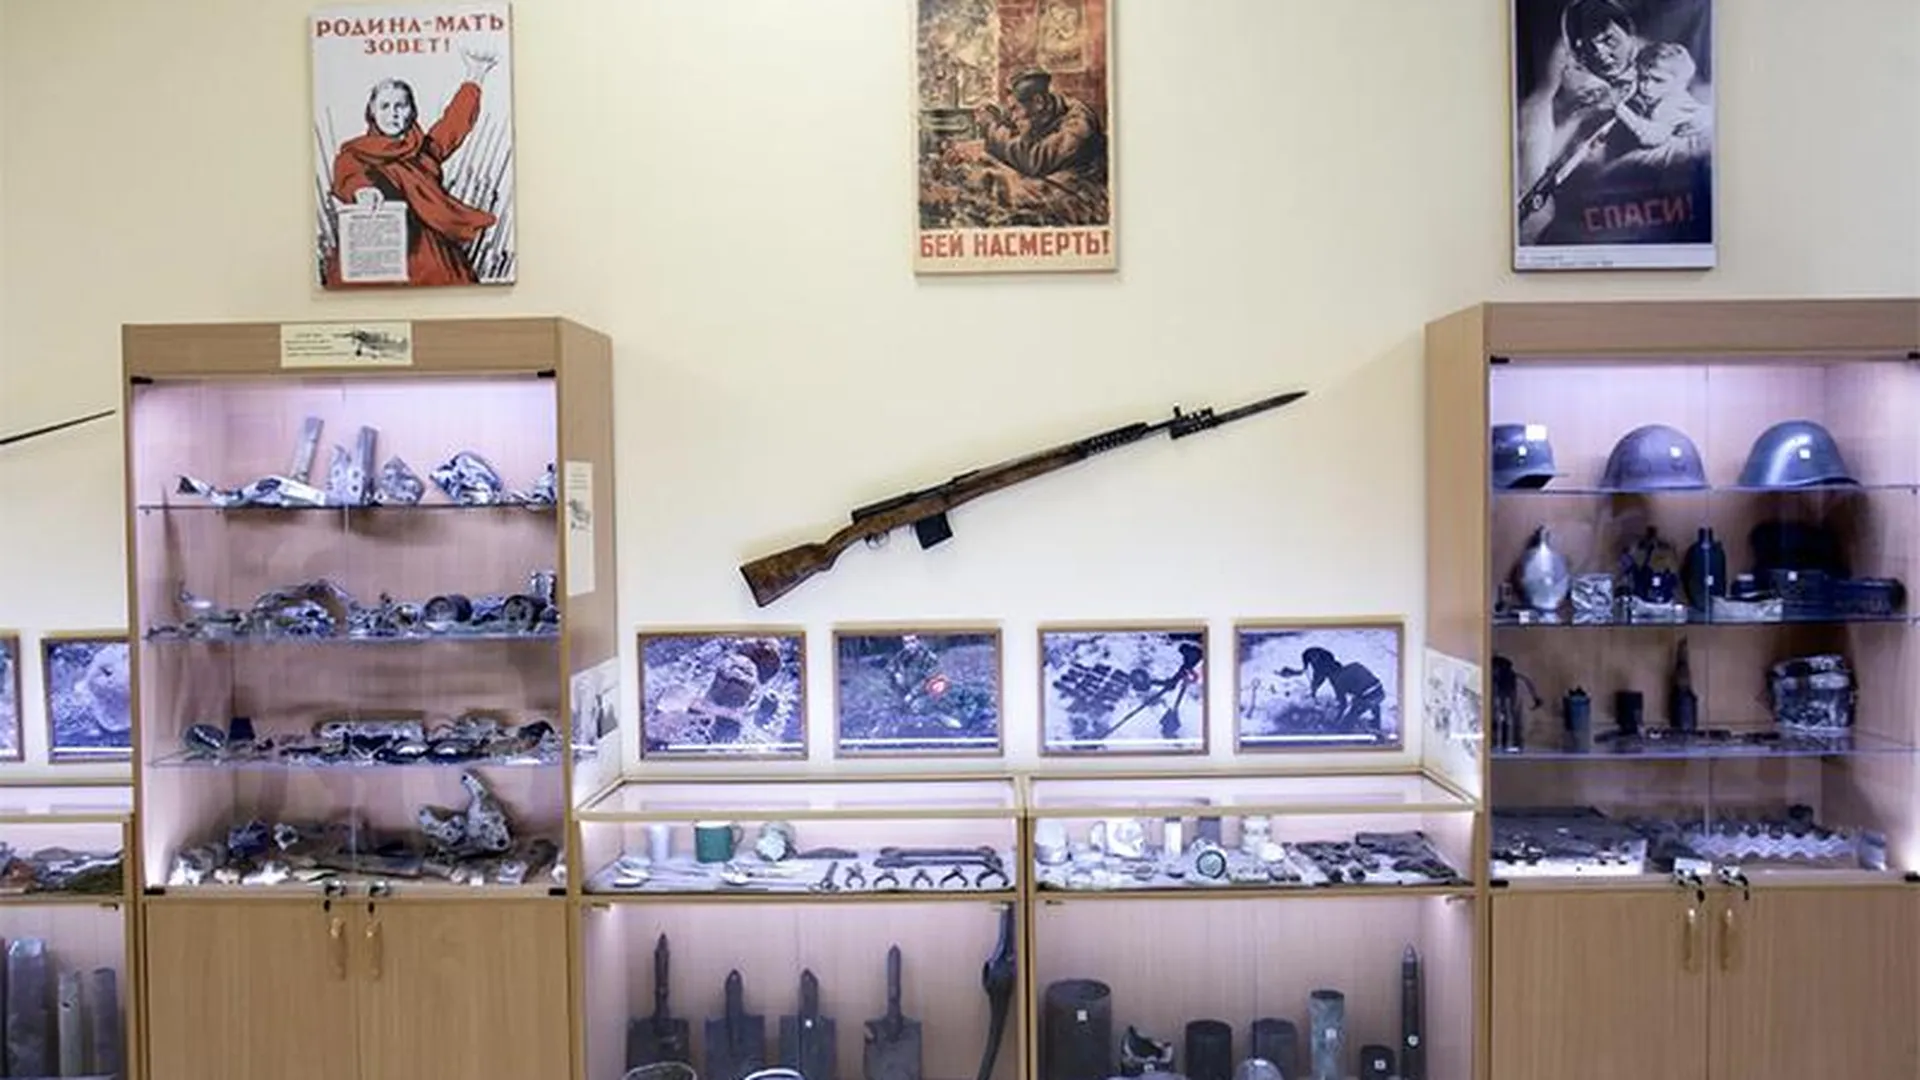 Экспонат или оружие: в Подмосковье проверят школьные музеи, где хранятся предметы Великой Отечественной войны 